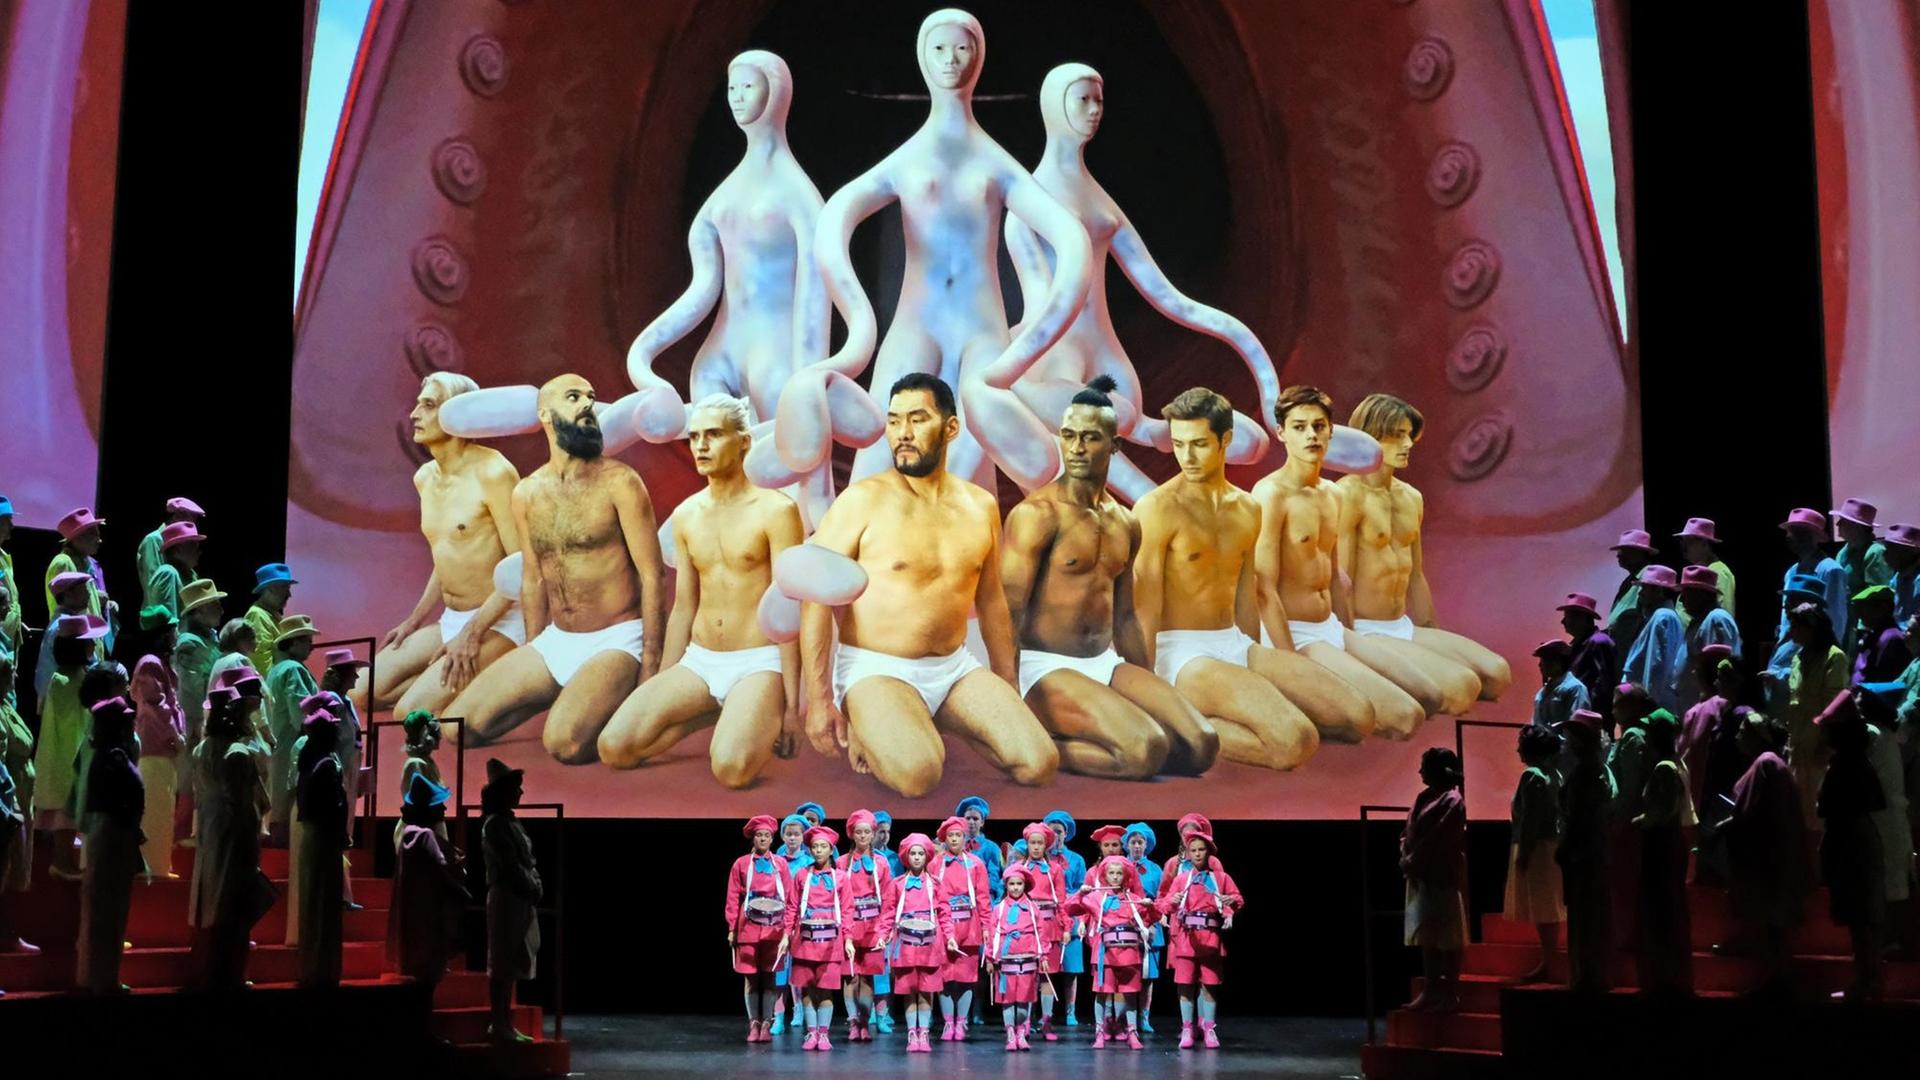 Szenenfoto: Rechts und links ein bunt gekleideter Chor, in der Mitte ein bunt gekleideter Jugend-Chor. Im Hintergrund eine riesige Projektion von acht Männern in weißen Unterhosen, hinter ihnen: drei nicht-menschliche Figuren mit langen Armen.